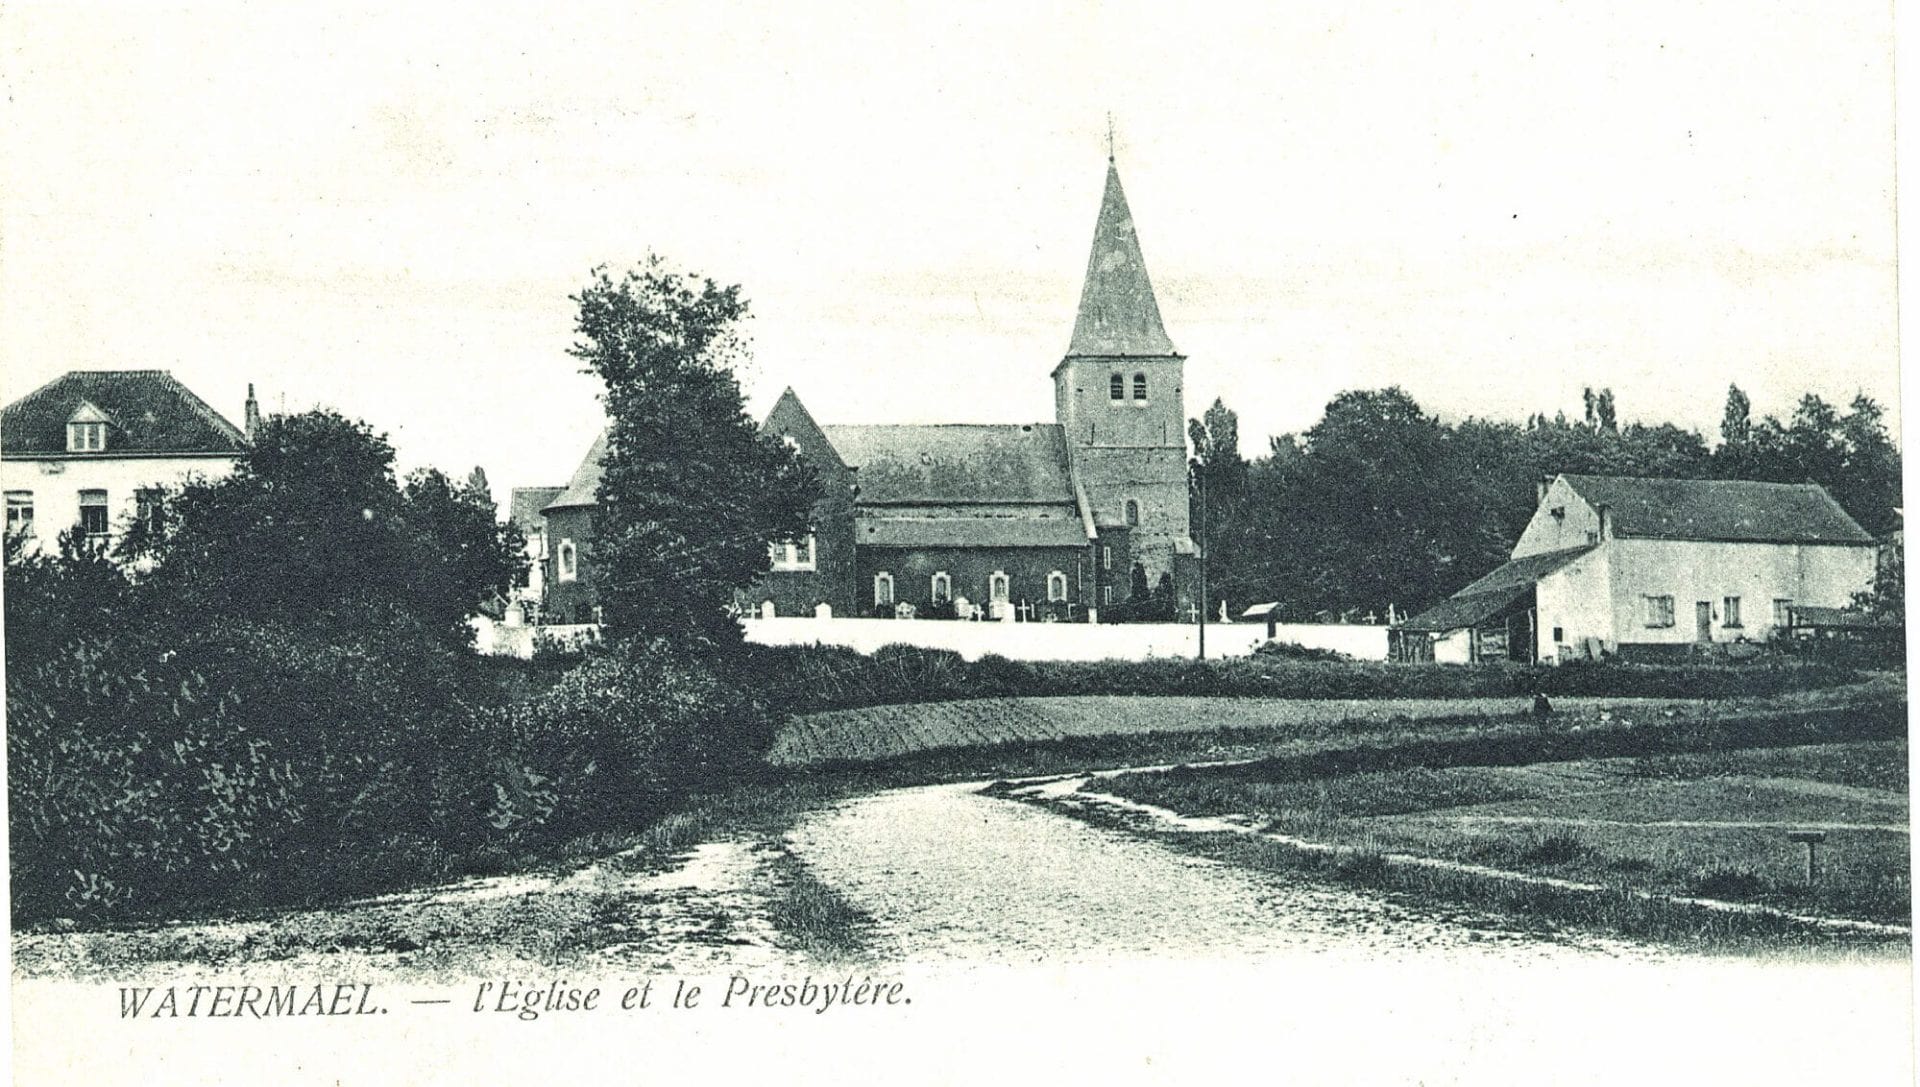 L'église Saint-Clément et son cimetière entre le presbytère, à gauche, et la ferme Penninckx, à droite - Carte postale, vers 1905.